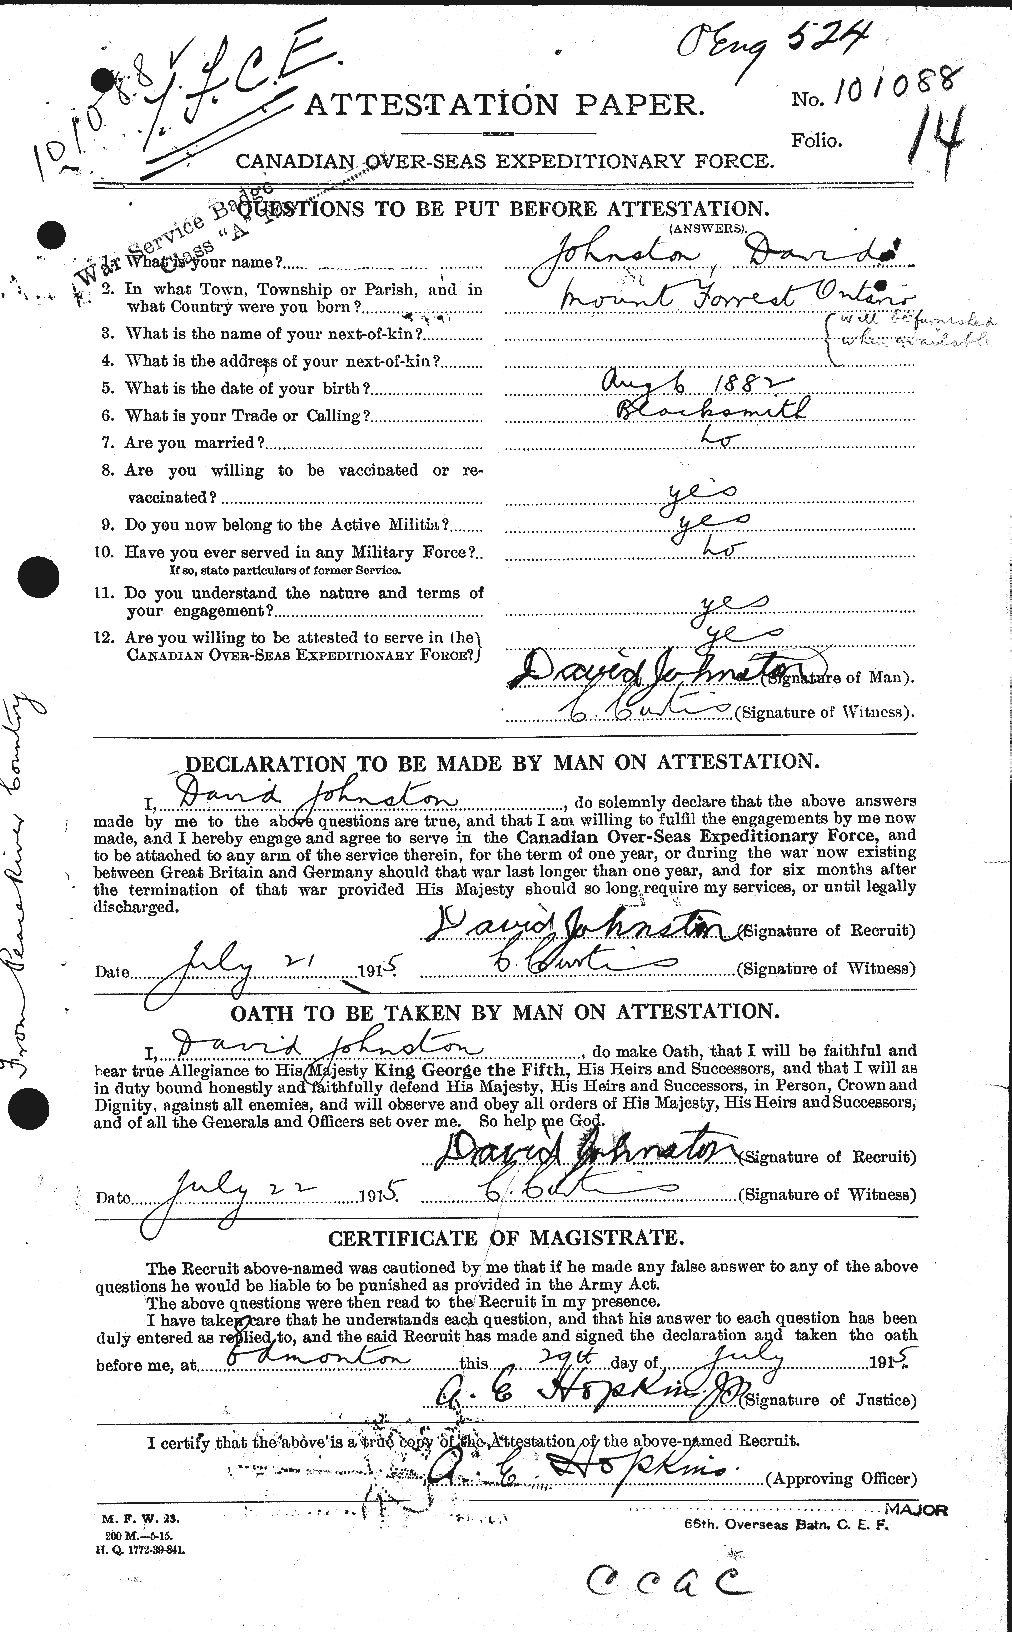 Dossiers du Personnel de la Première Guerre mondiale - CEC 423150a